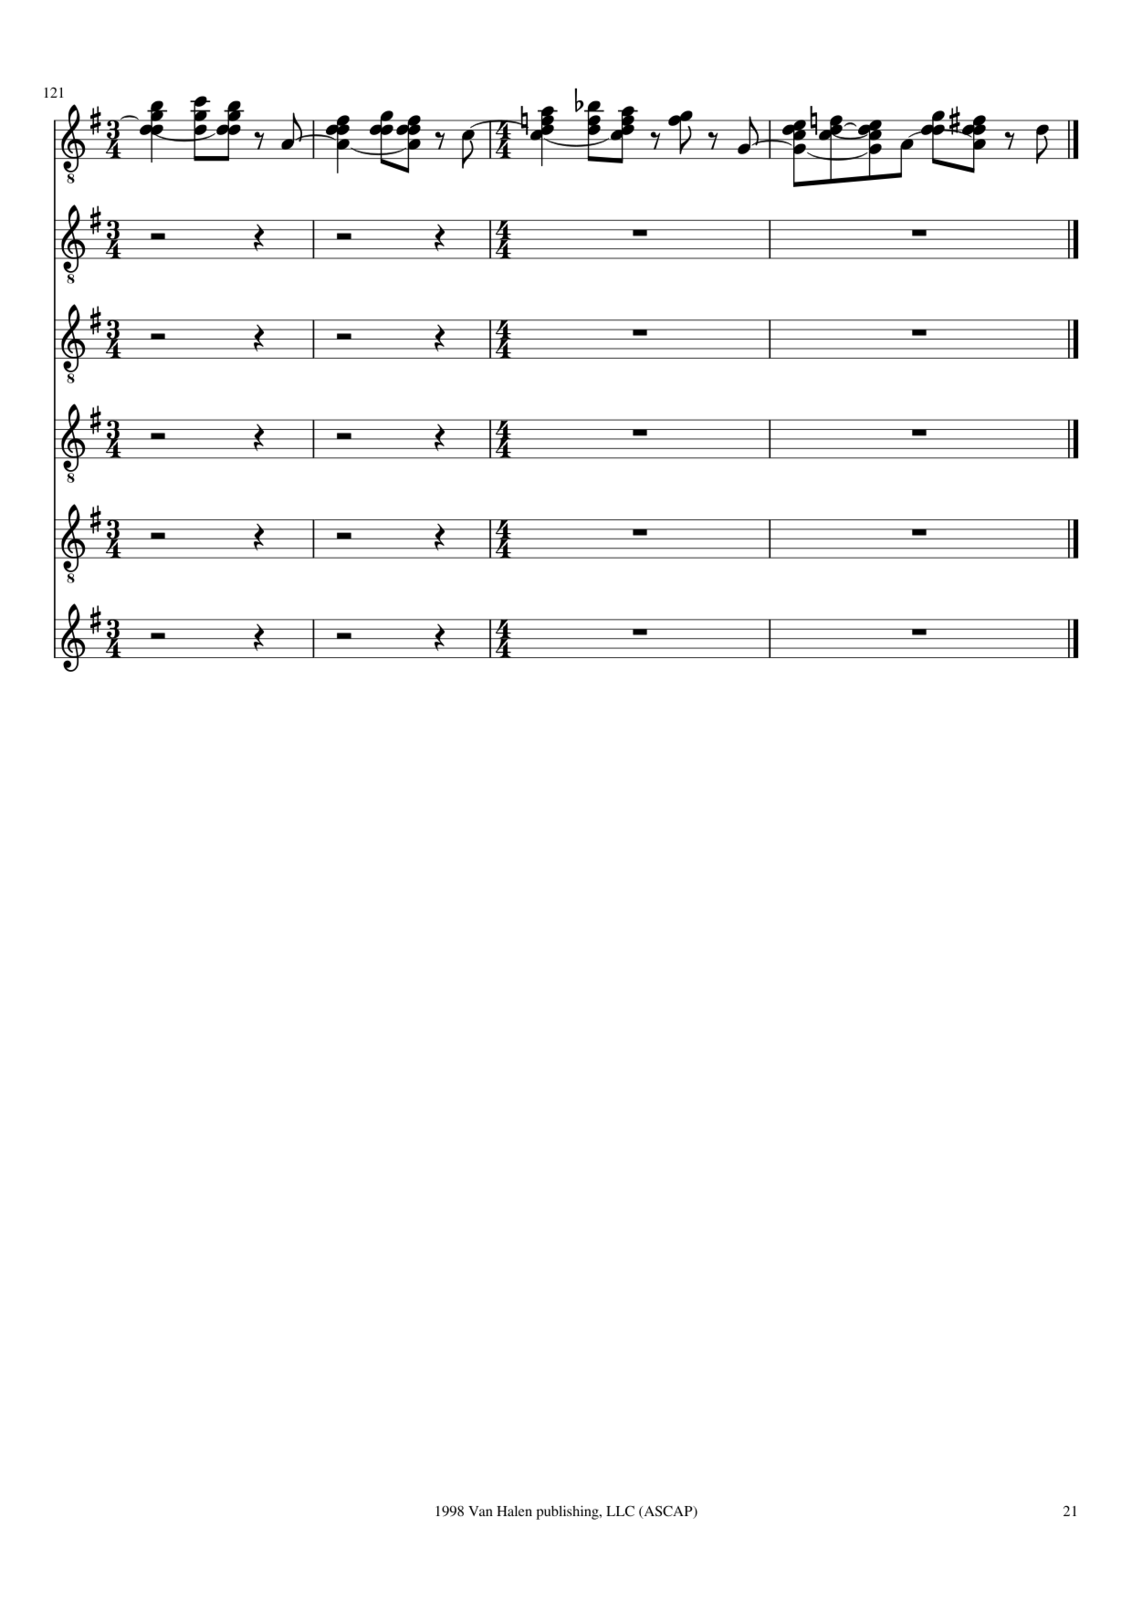 Utro polinyi slide, Image 105